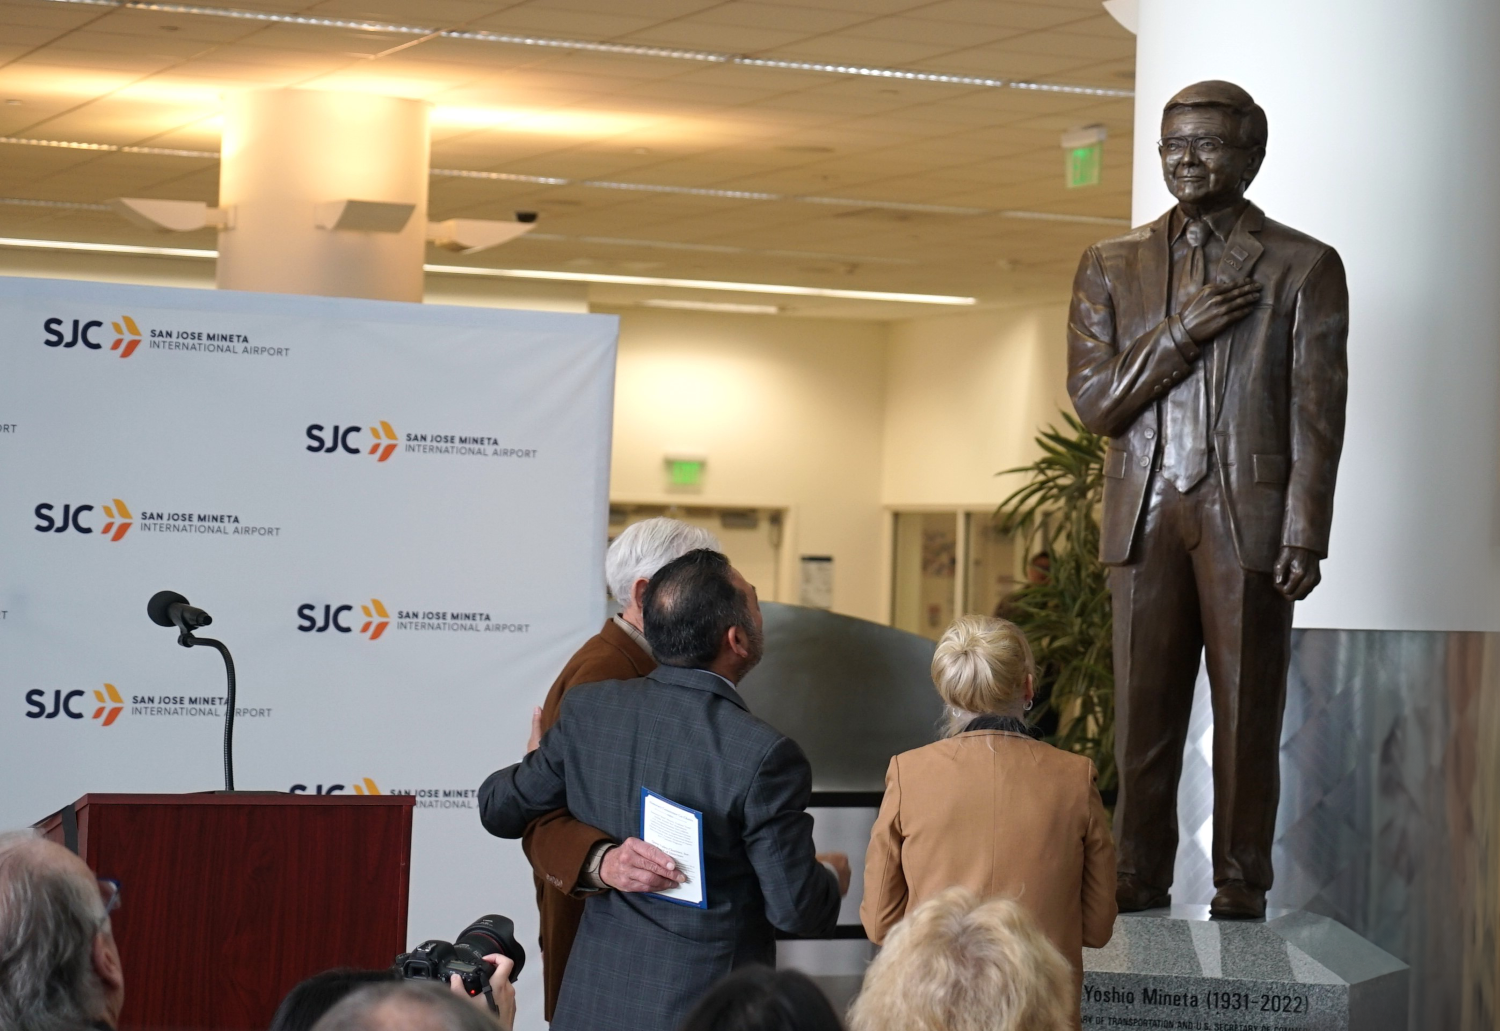 Mineta statue unveiling event at SJC